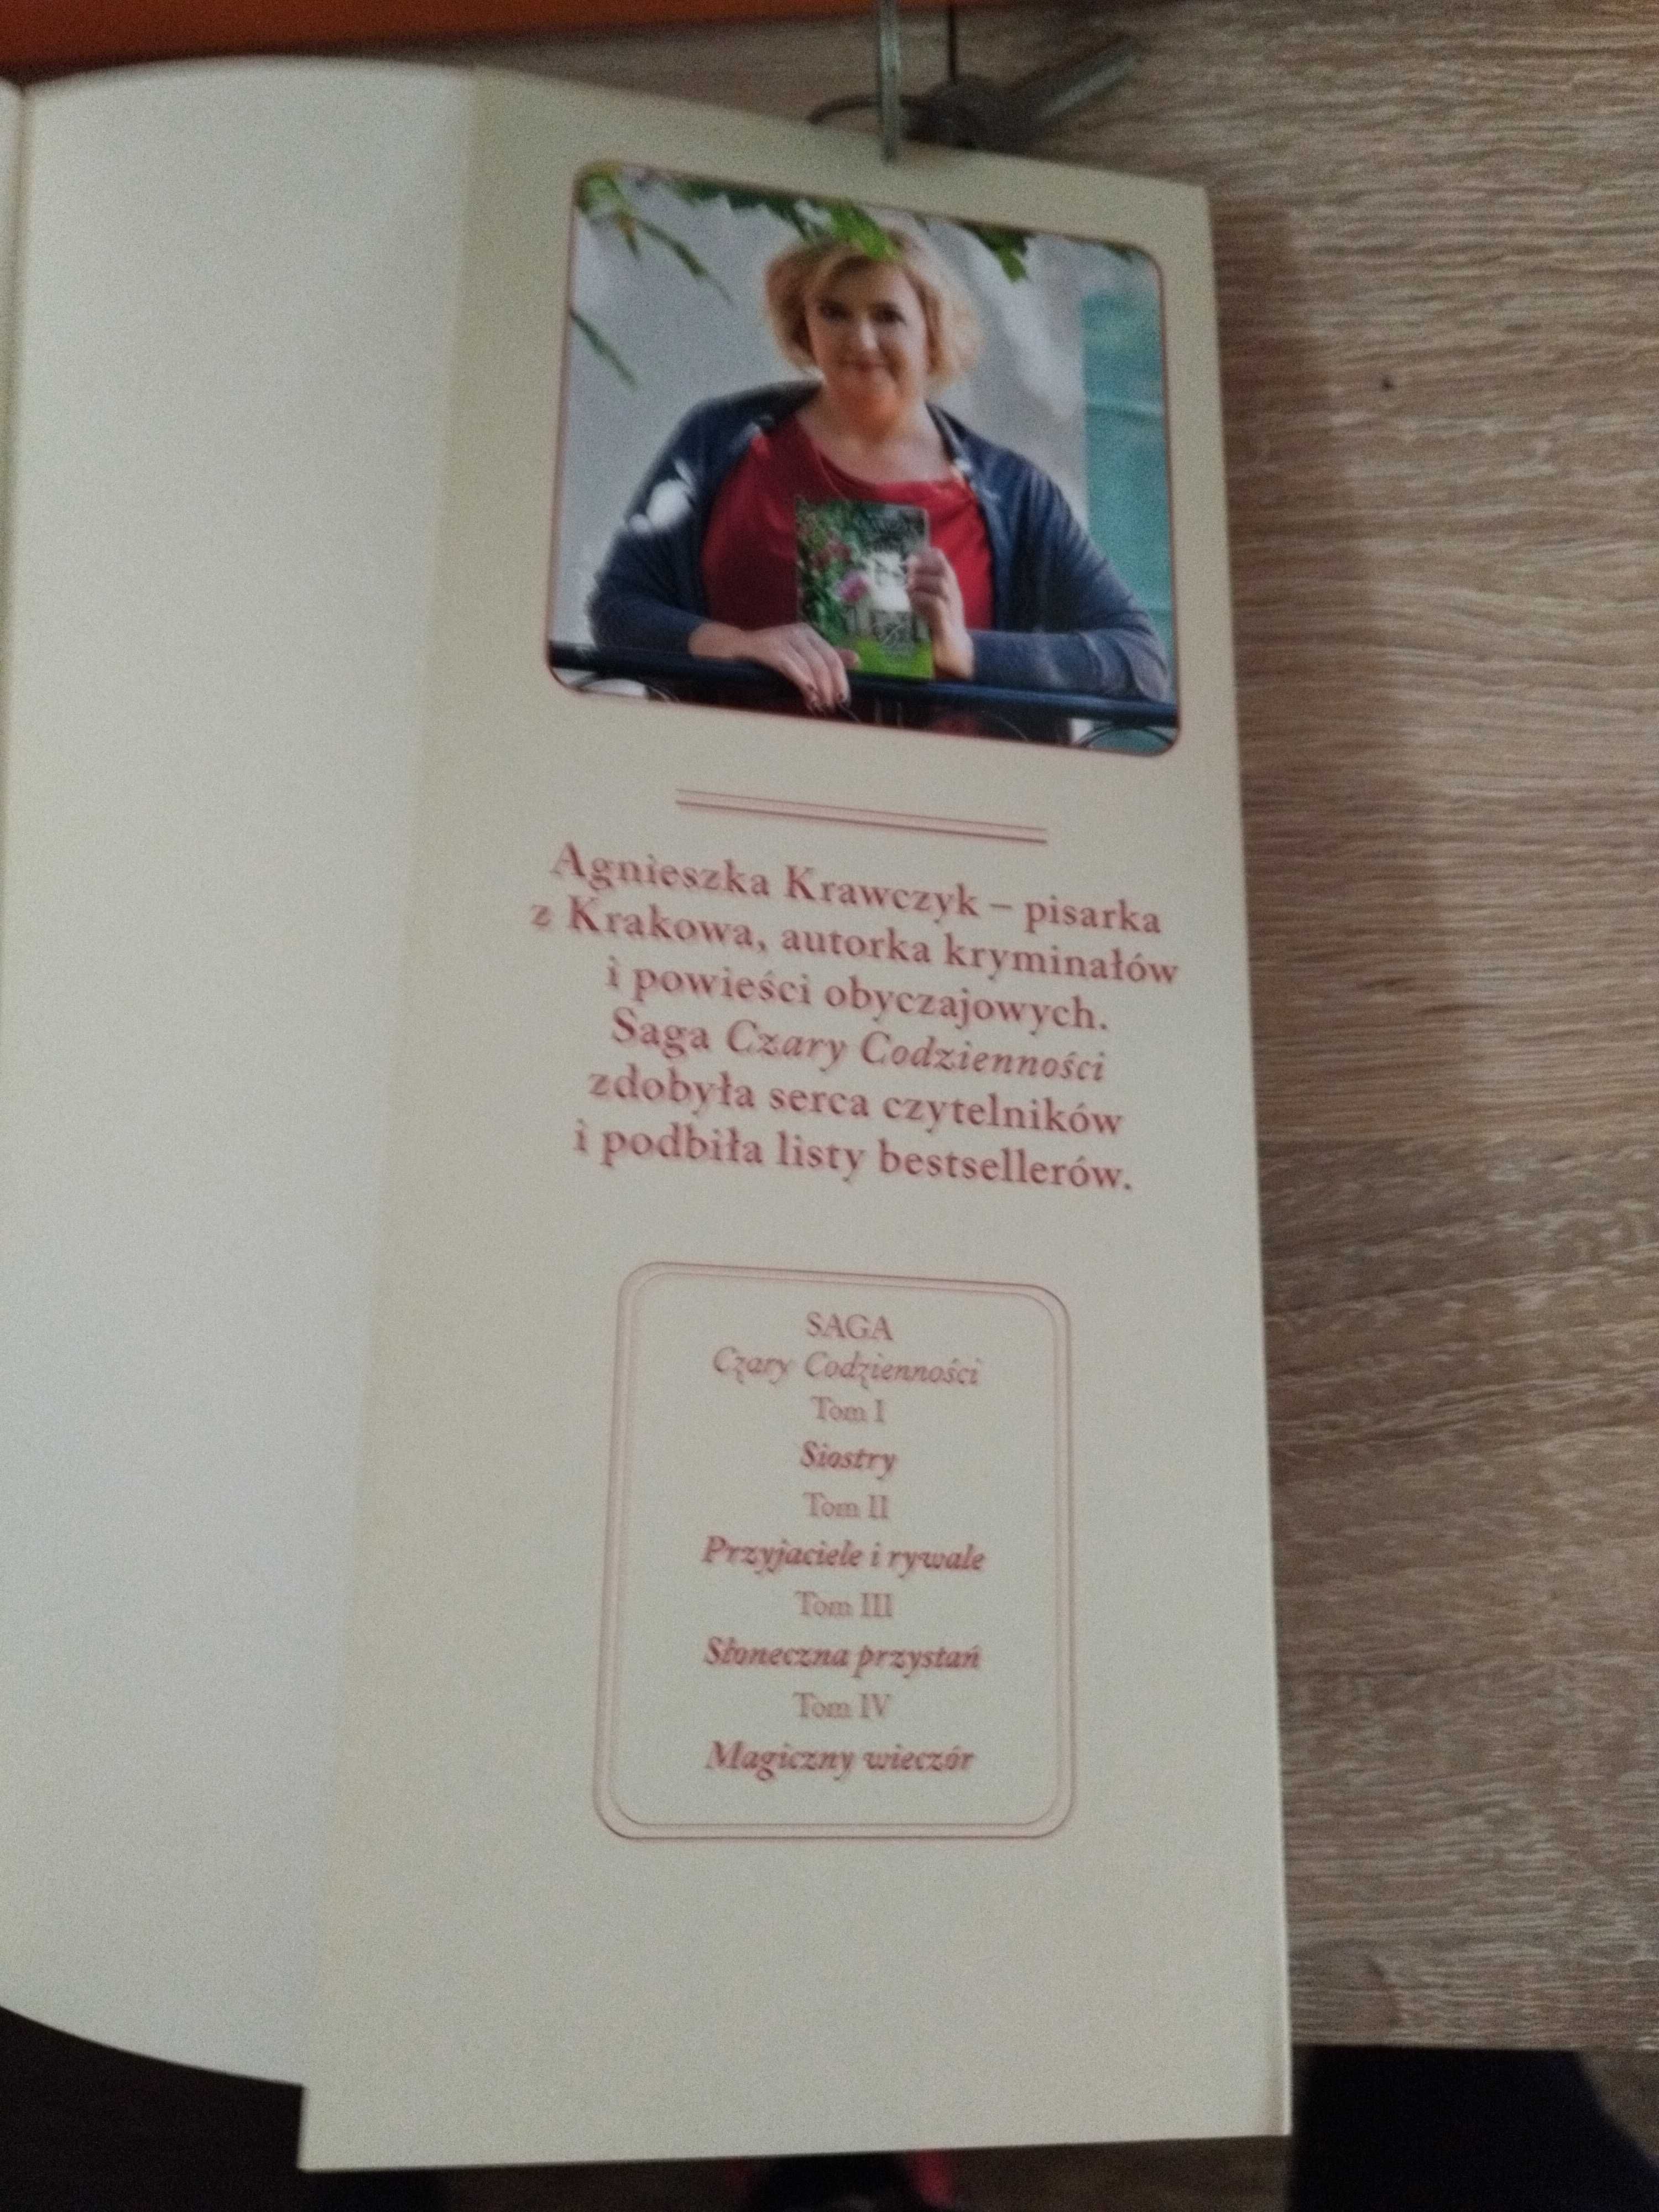 Agnieszka Krawczyk
Dobre uczynki